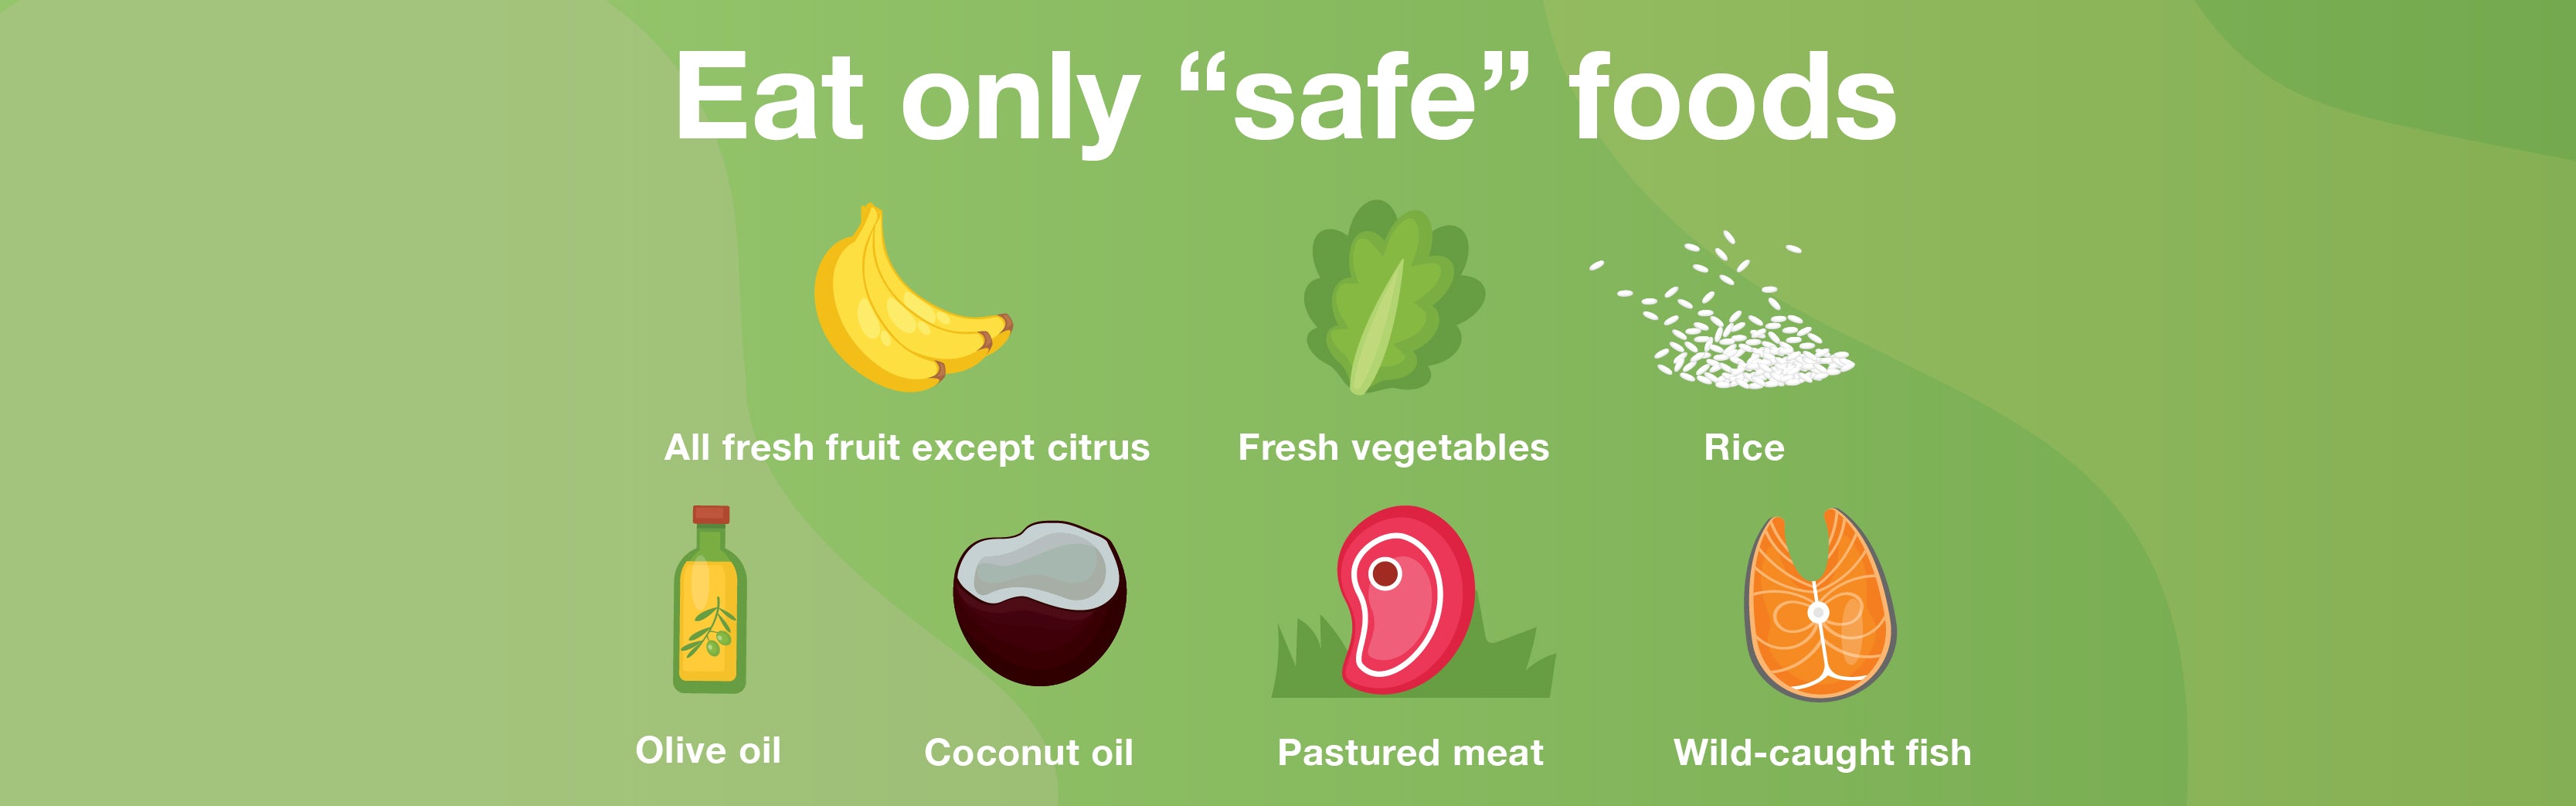 Eat Only "safe" Foods